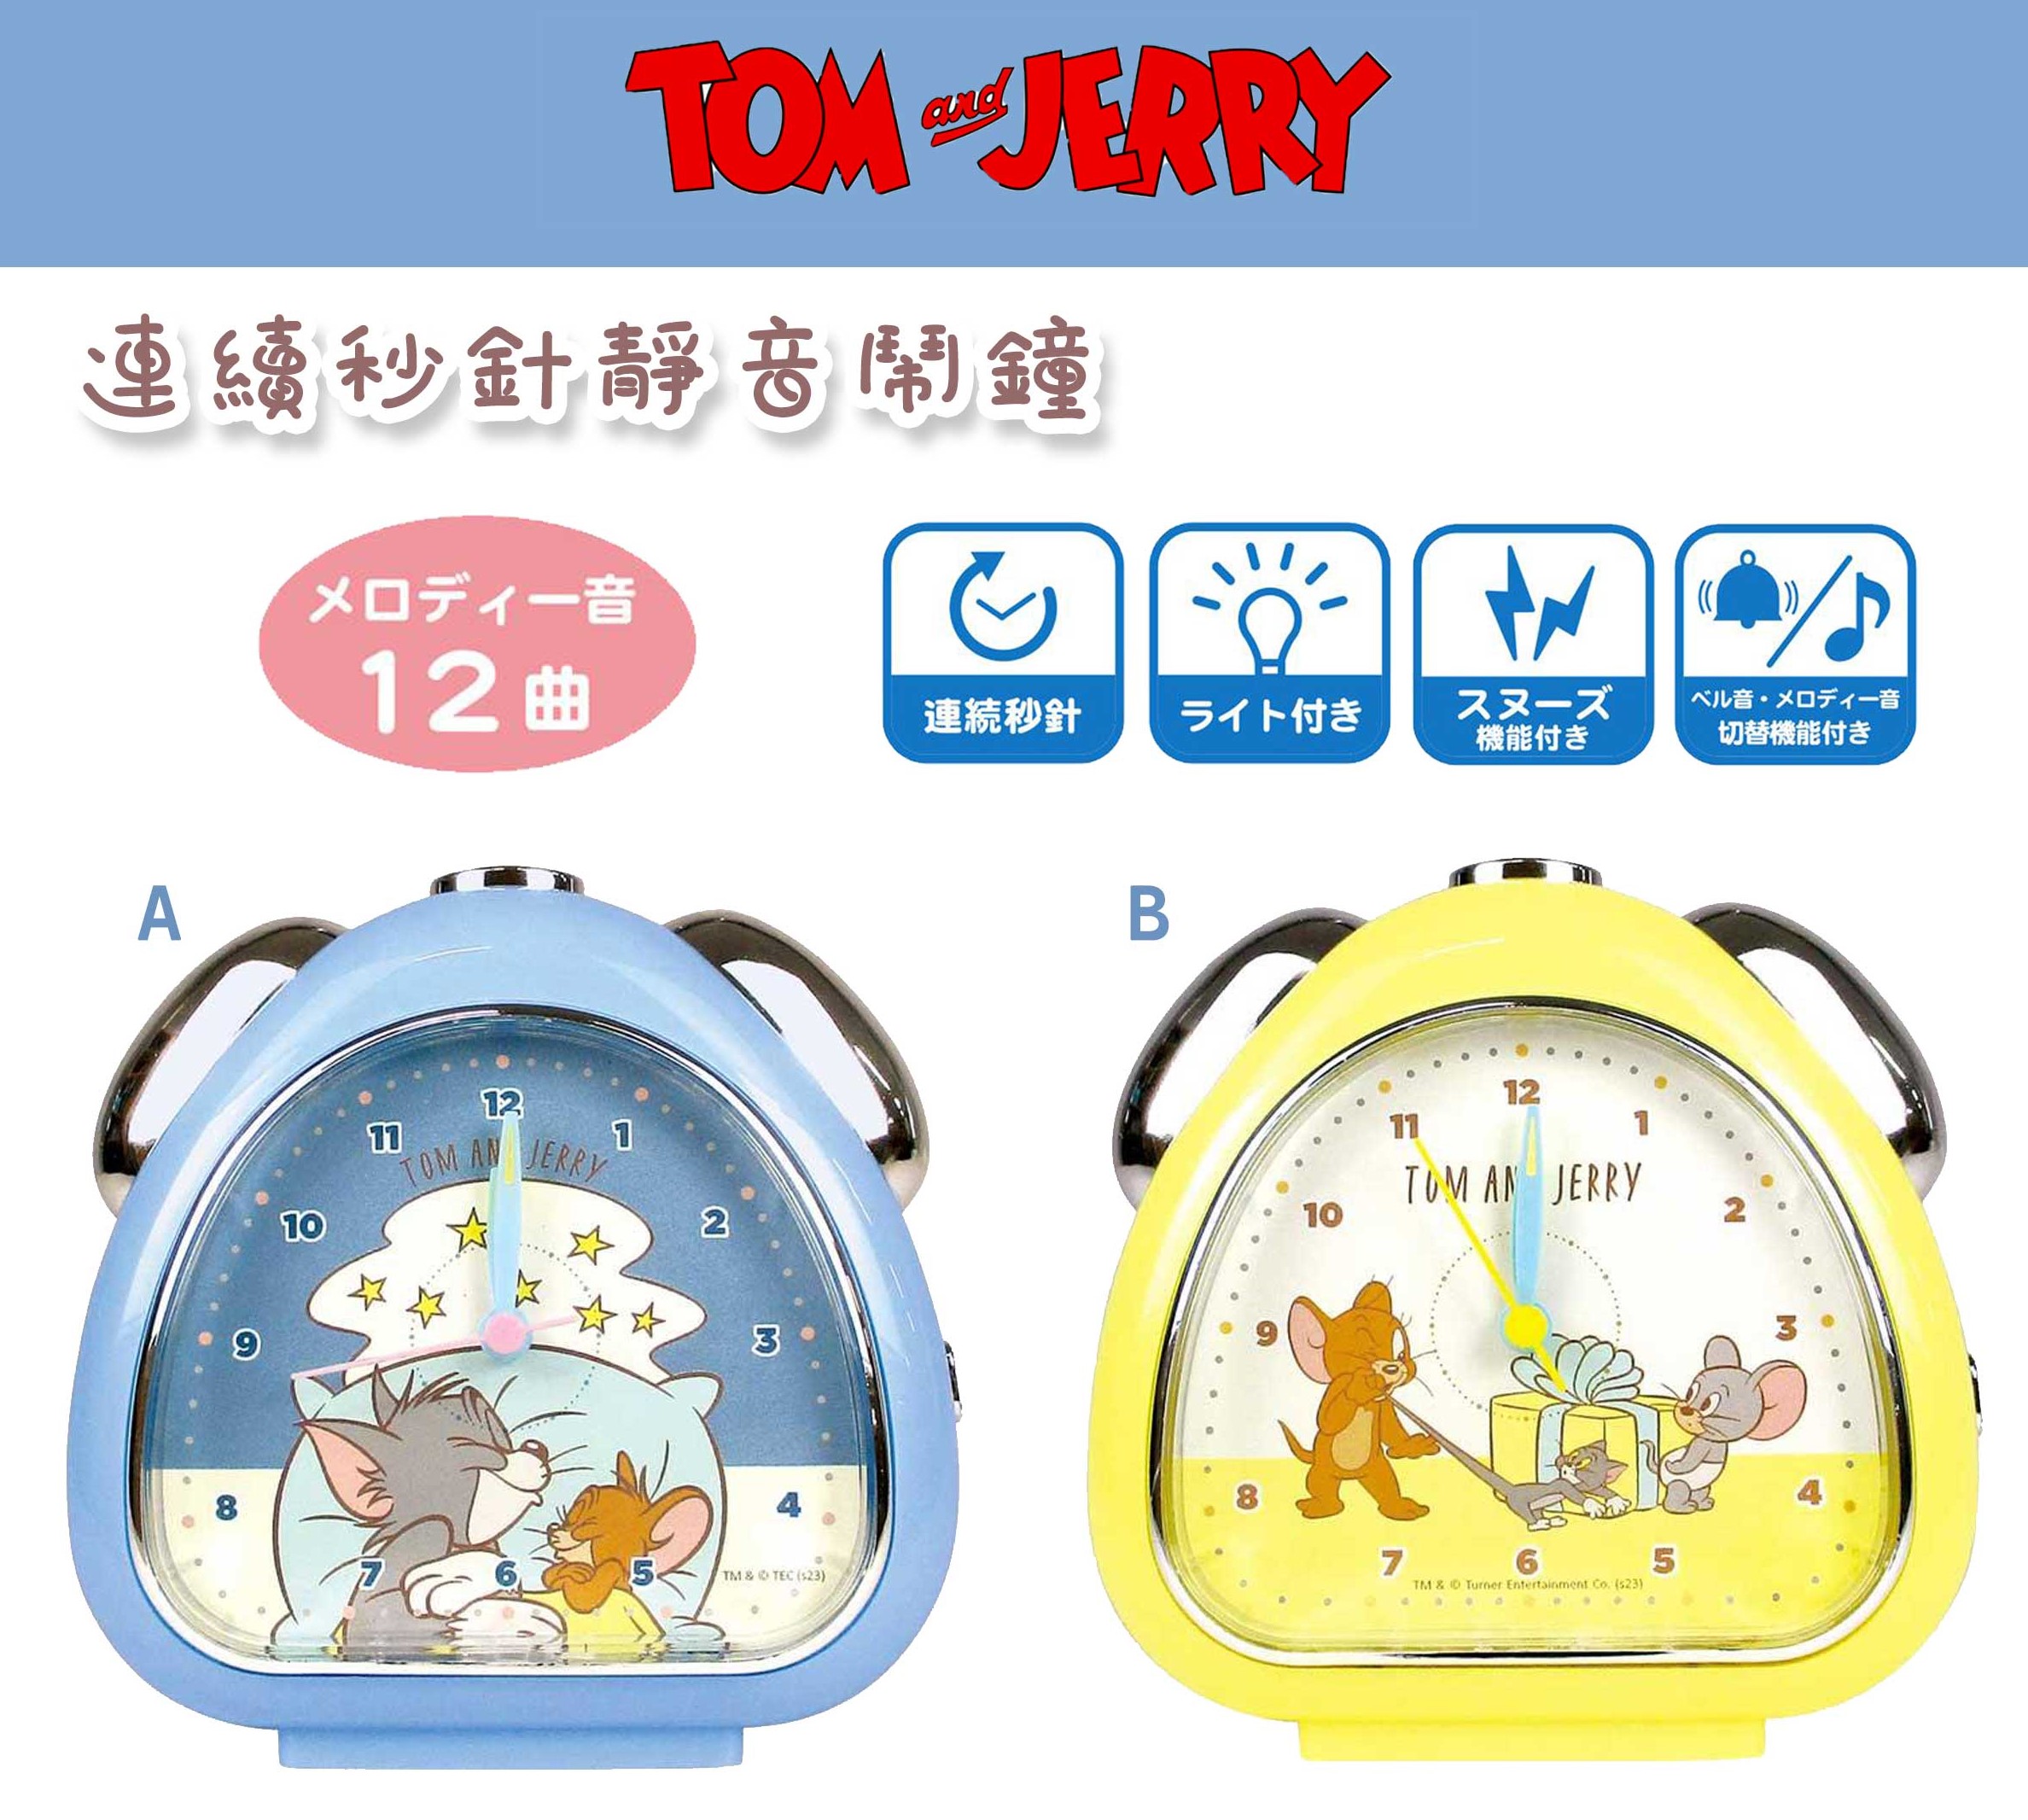 連續秒針靜音鬧鐘-湯姆貓與傑利鼠 TOM and JERRY 日本進口正版授權